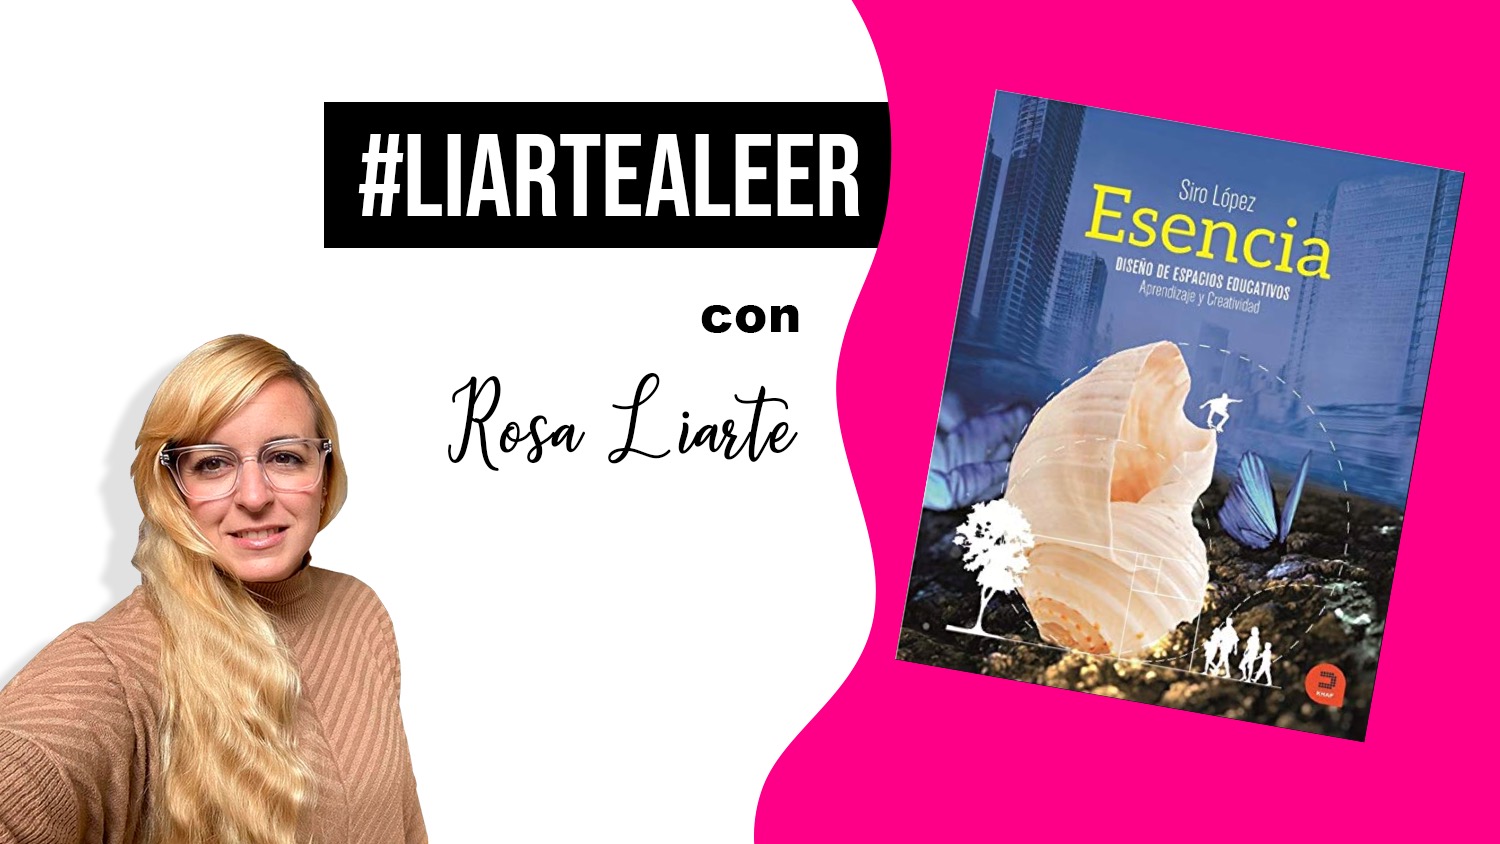 #LiarteaLeer: Esencia de Siro López